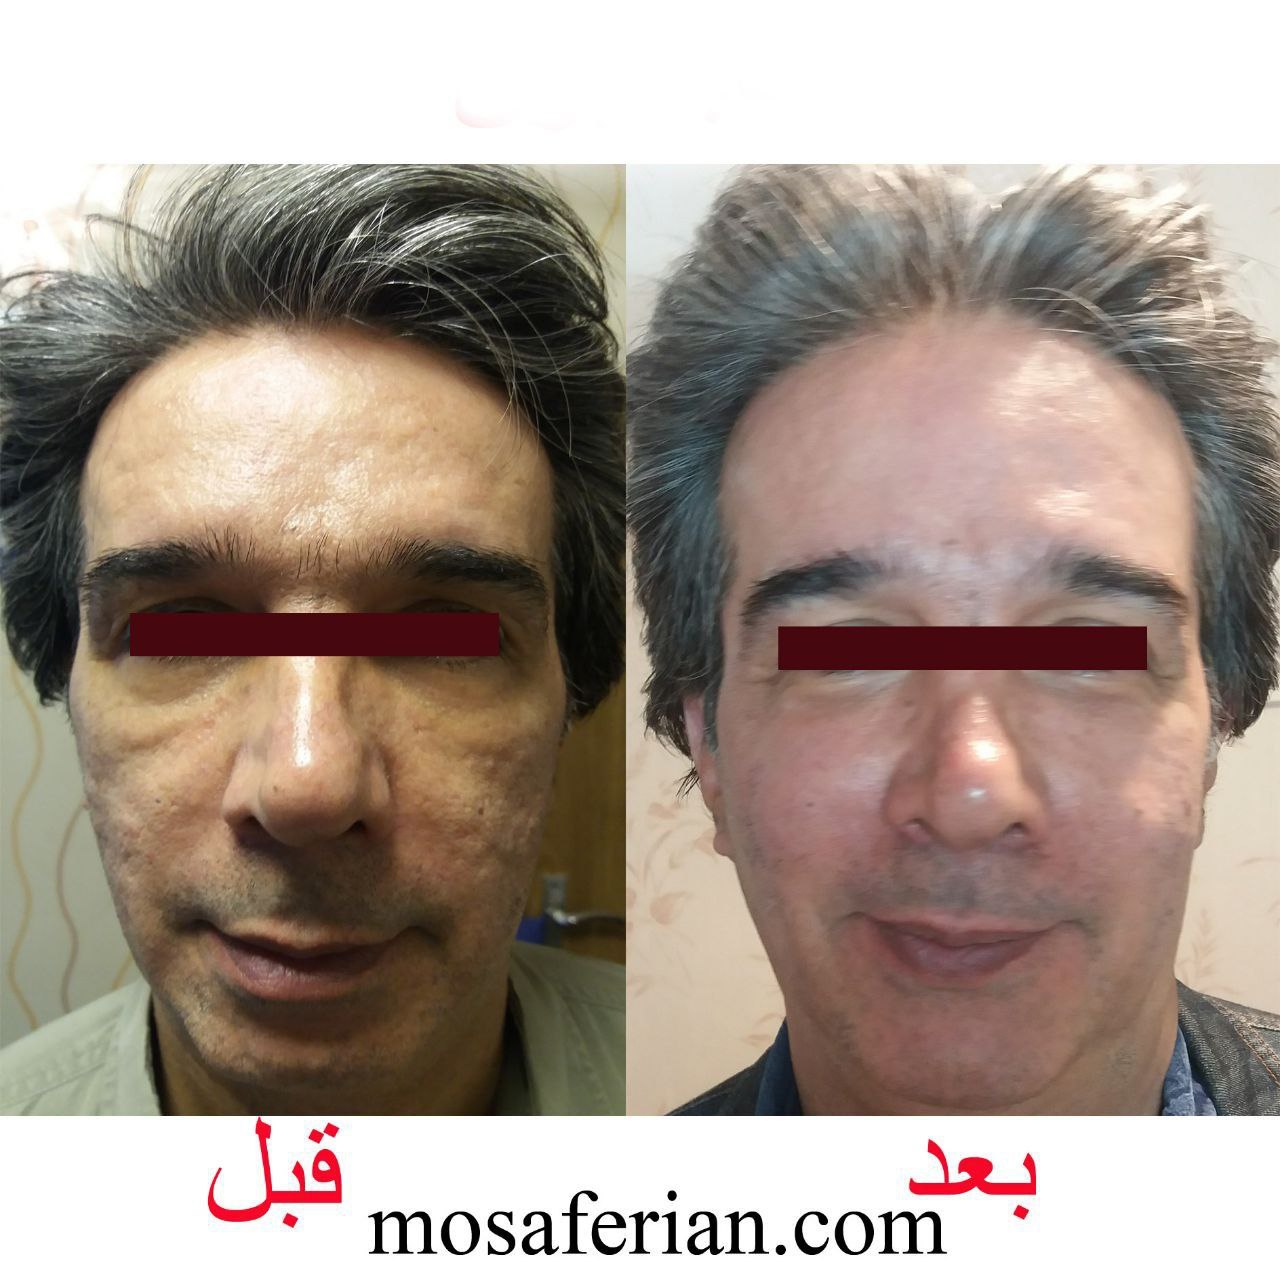 Nanofat for acne scar